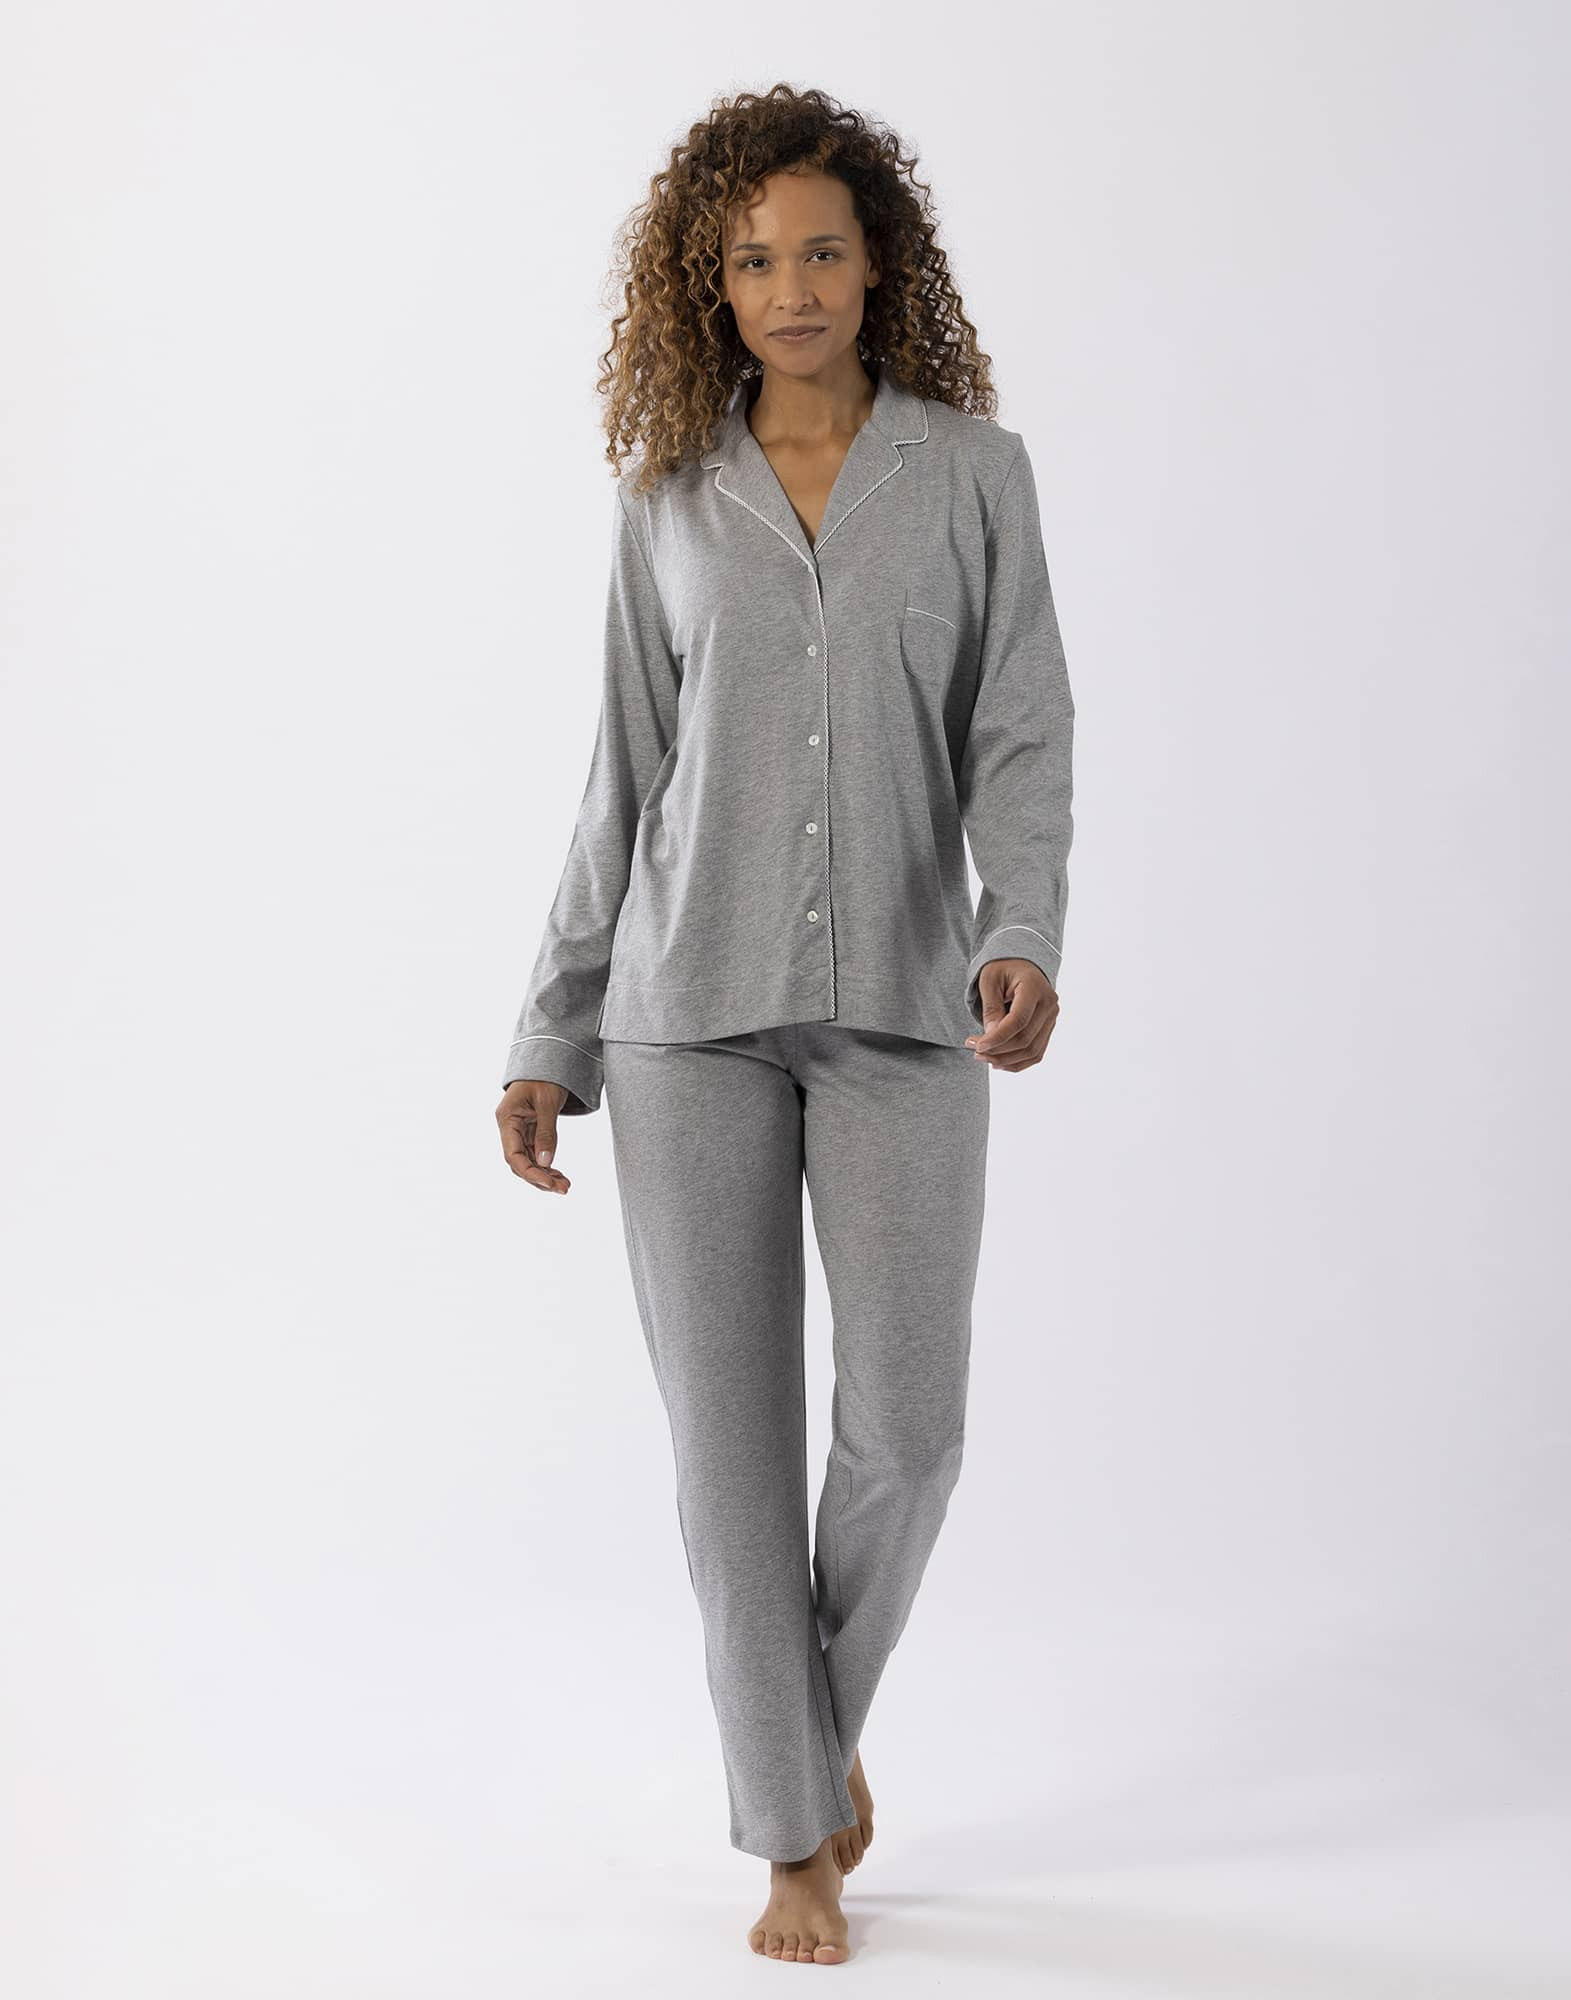 Pyjama long a côtes avec capuche fabrication française- Femme